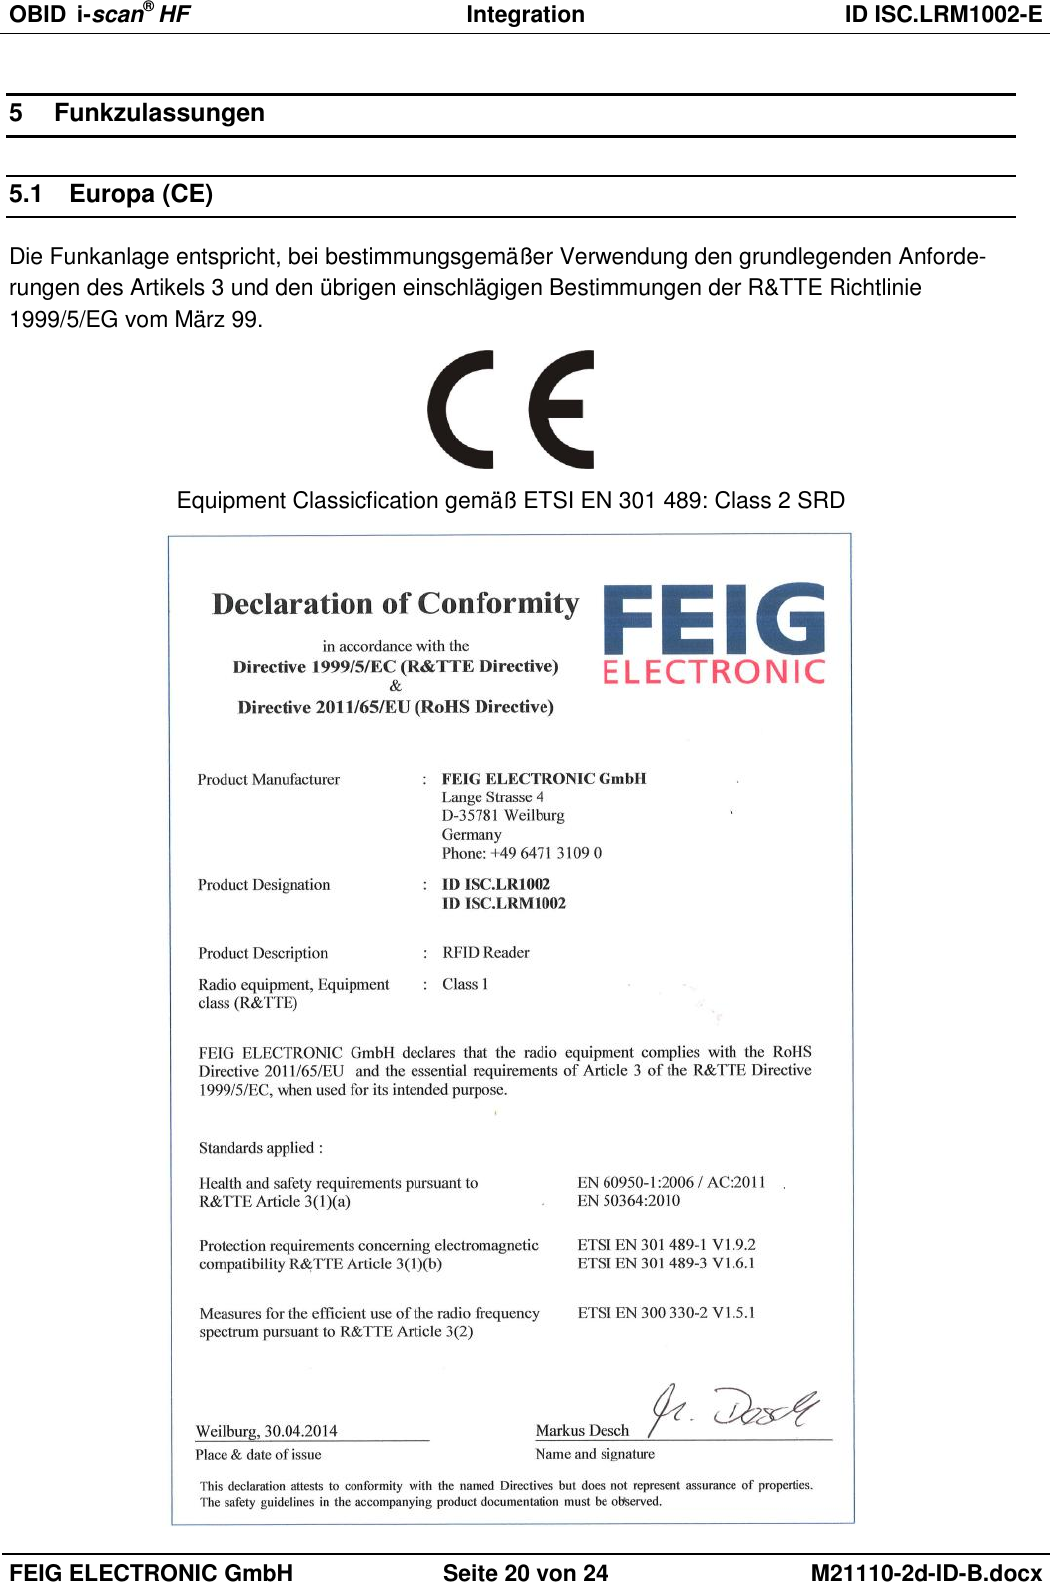 OBID  i-scan® HF Integration  ID ISC.LRM1002-E  FEIG ELECTRONIC GmbH Seite 20 von 24 M21110-2d-ID-B.docx  5  Funkzulassungen 5.1  Europa (CE) Die Funkanlage entspricht, bei bestimmungsgemäßer Verwendung den grundlegenden Anforde-rungen des Artikels 3 und den übrigen einschlägigen Bestimmungen der R&amp;TTE Richtlinie 1999/5/EG vom März 99.  Equipment Classicfication gemäß ETSI EN 301 489: Class 2 SRD  